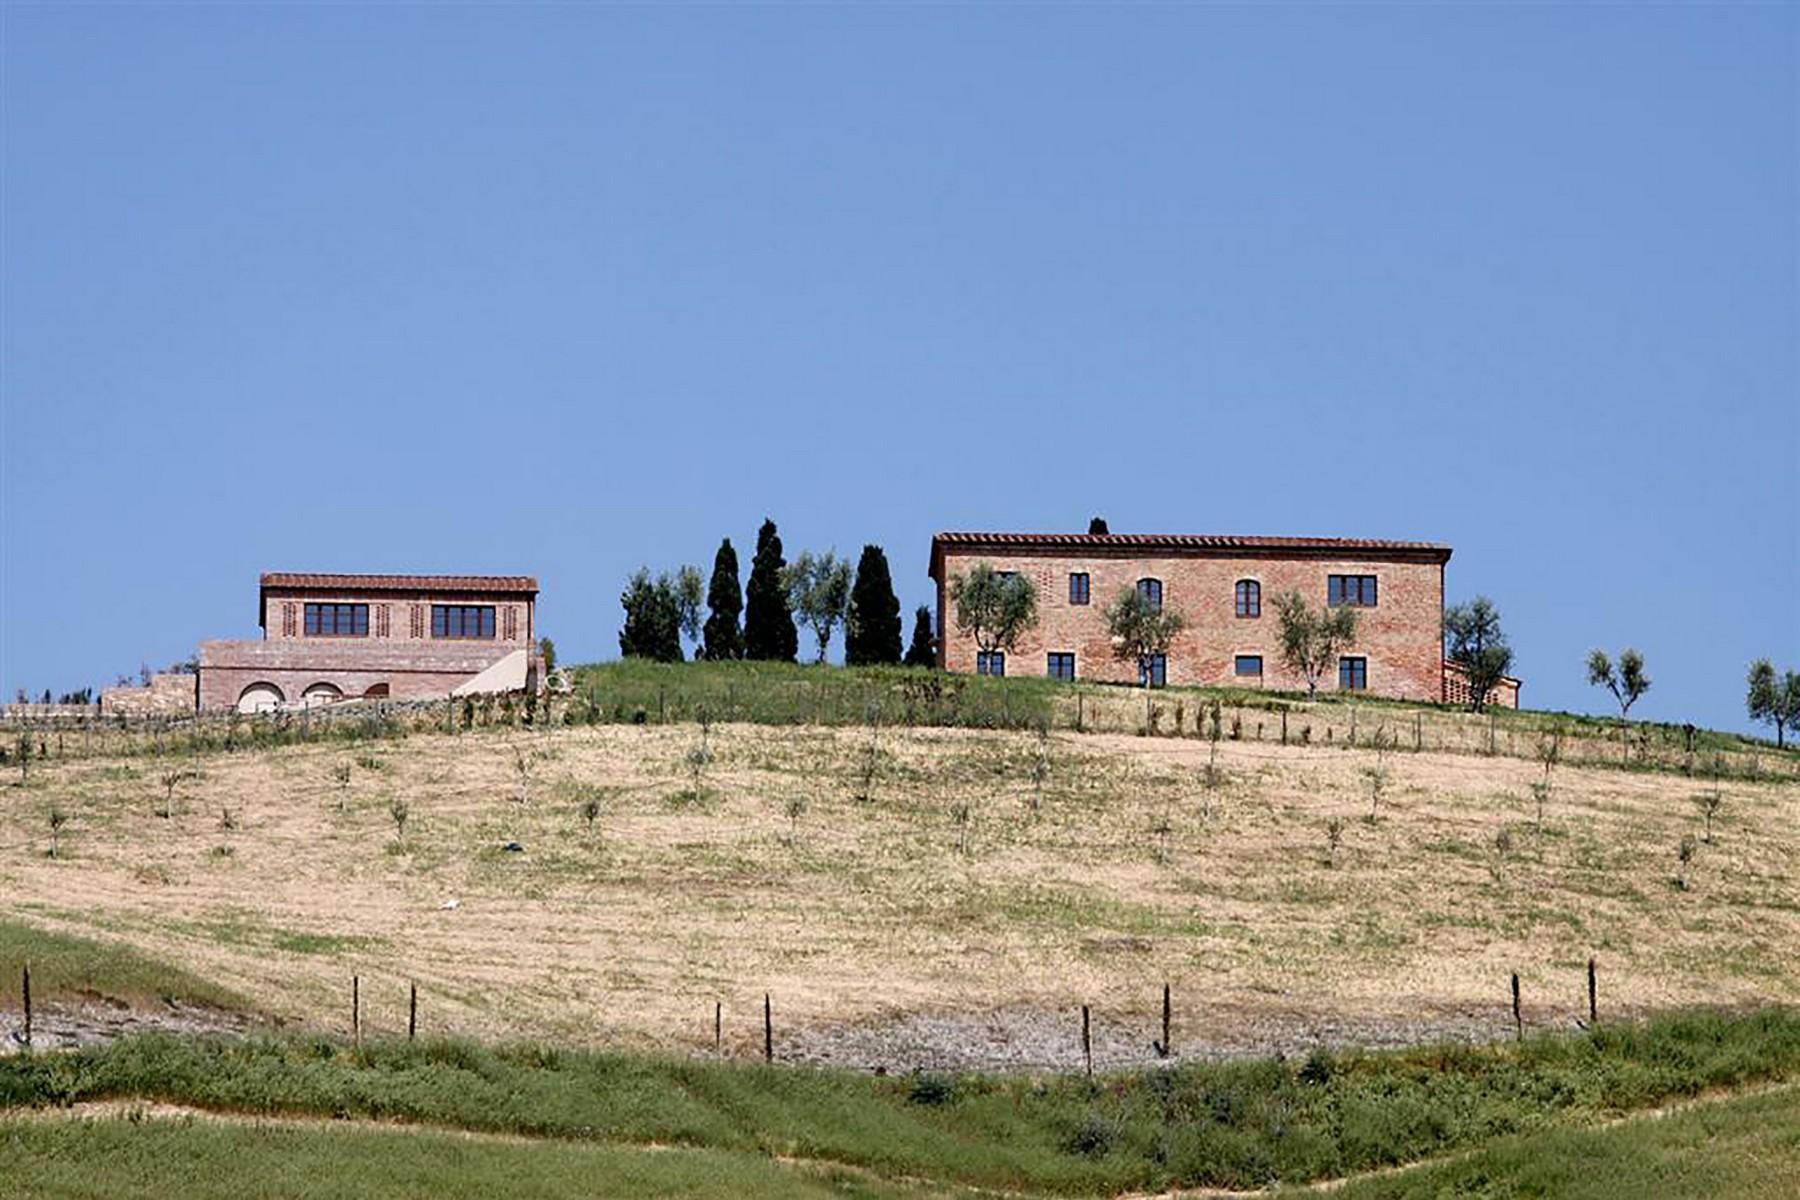 Wunderschönes Bauernhaus mit atemberaubenden Blick auf die Crete Senesi - 10